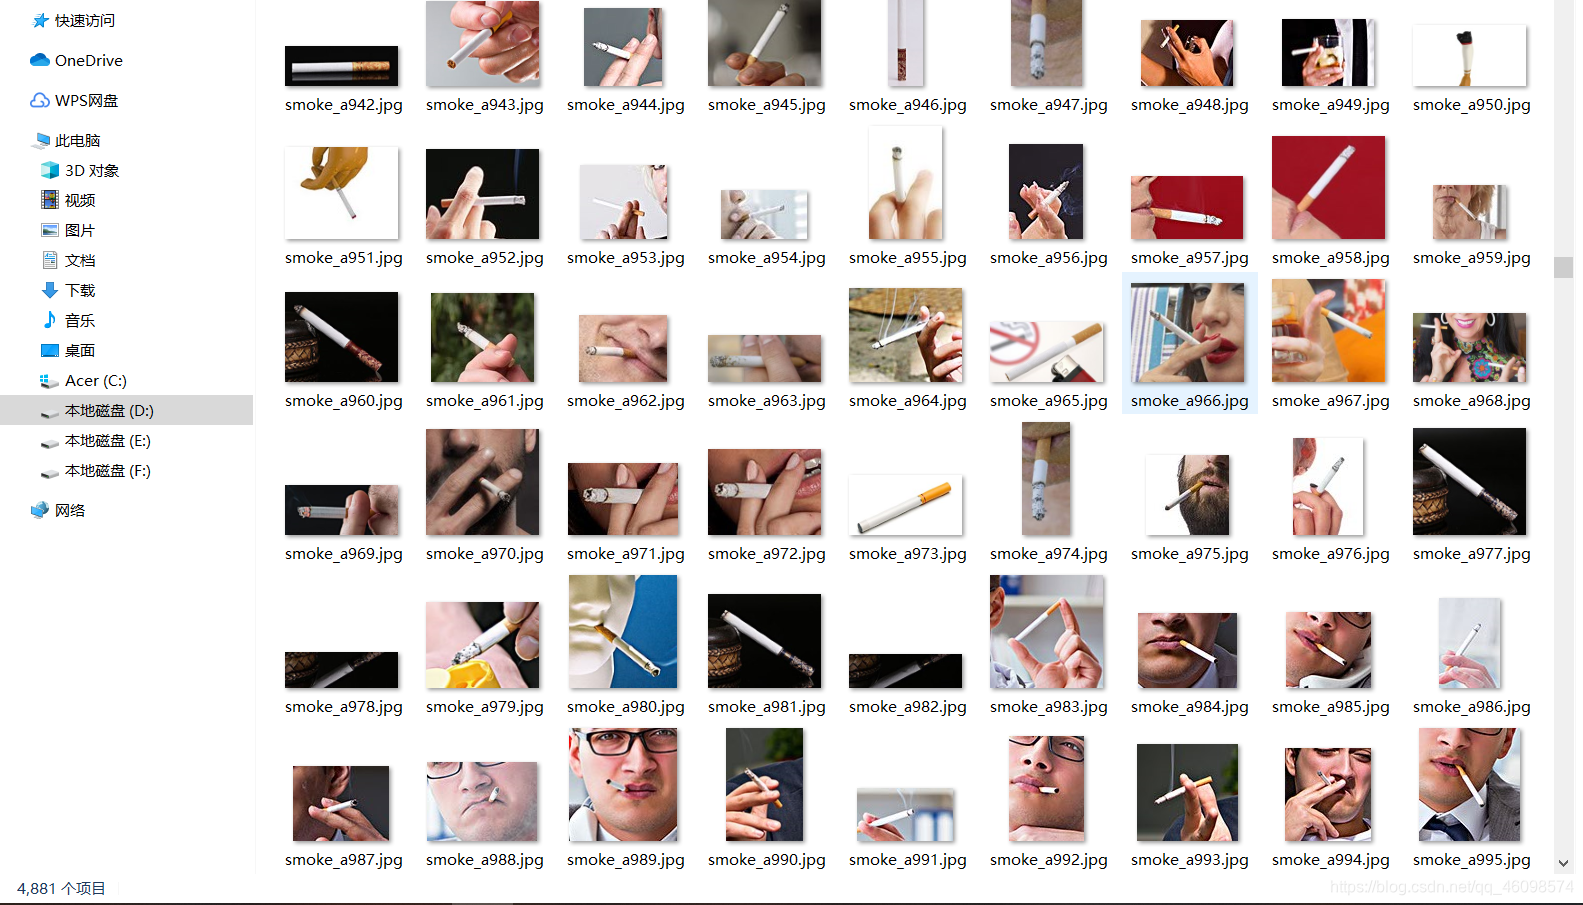 【项目实战】YOLOV5 +实时吸烟目标检测+手把手教学+开源全部qq46098574的博客-